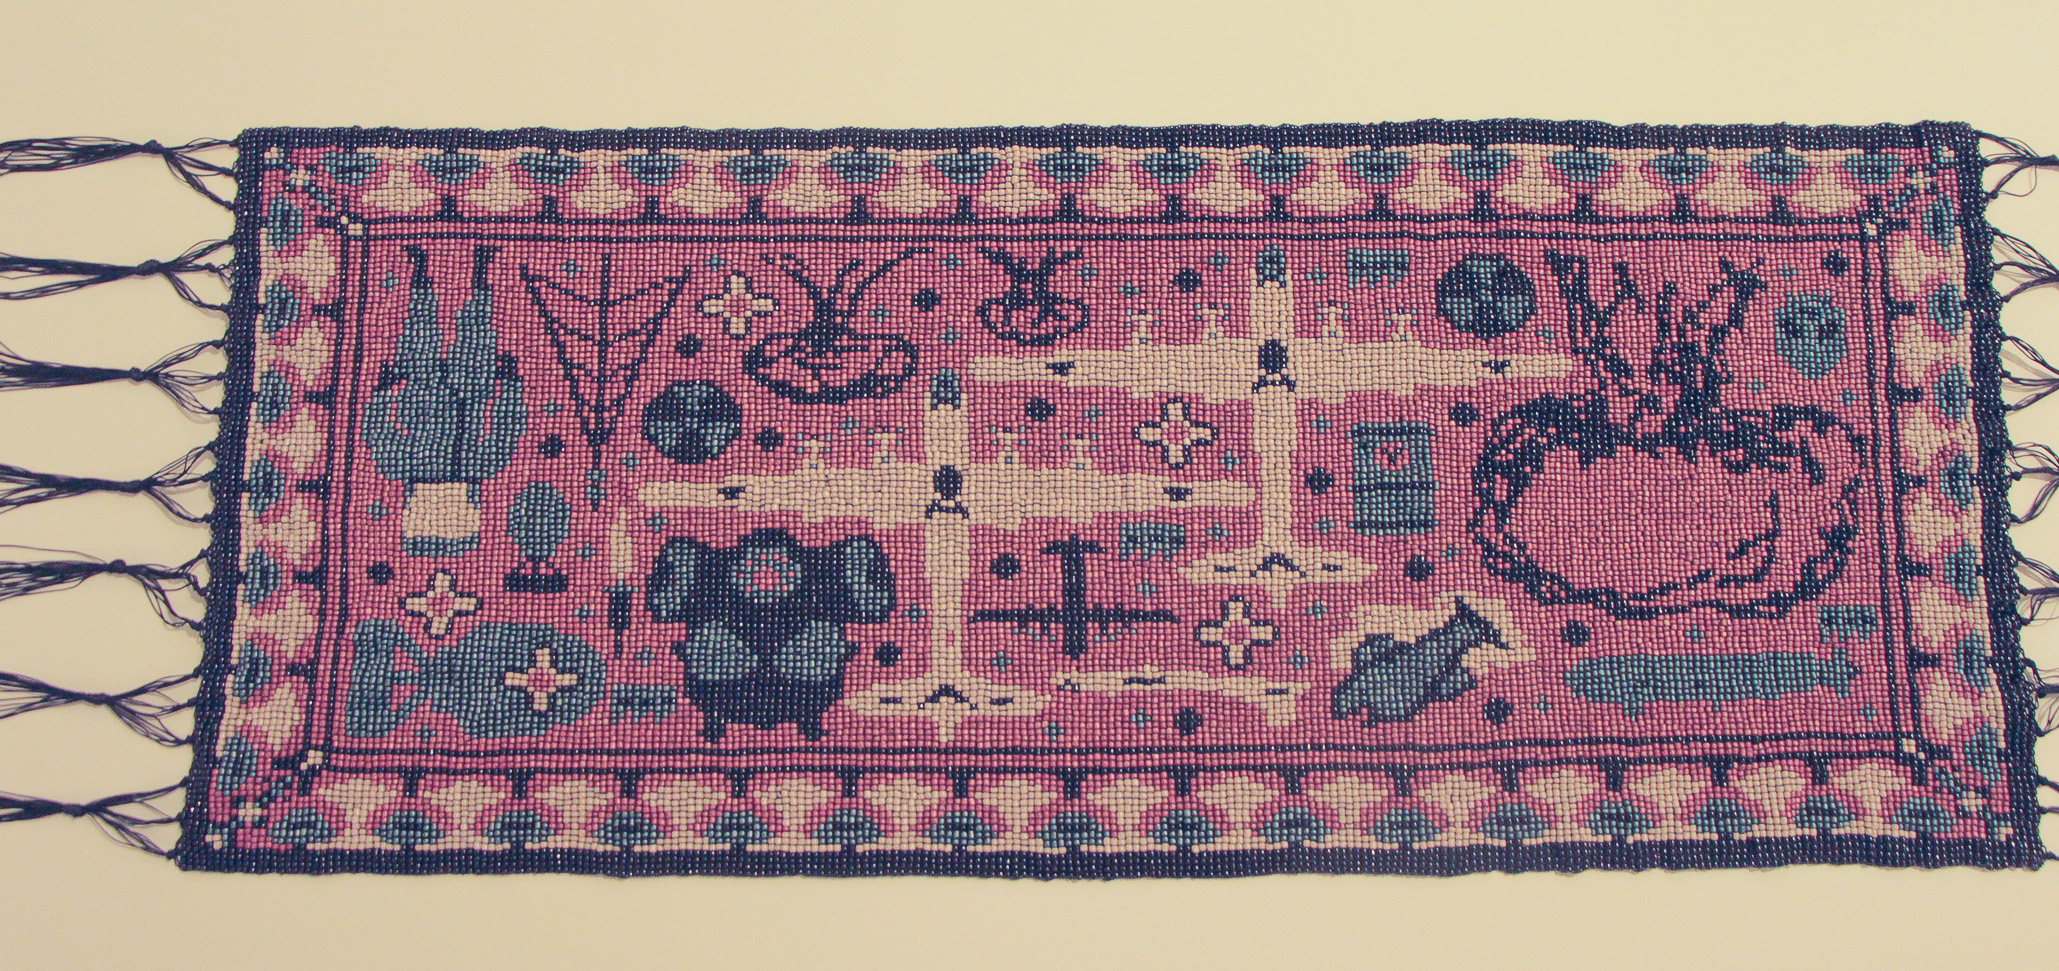 Nós do Caos (2023), tapeçaria com miçangas - Foto: Cecília Bastos/USP Imagens